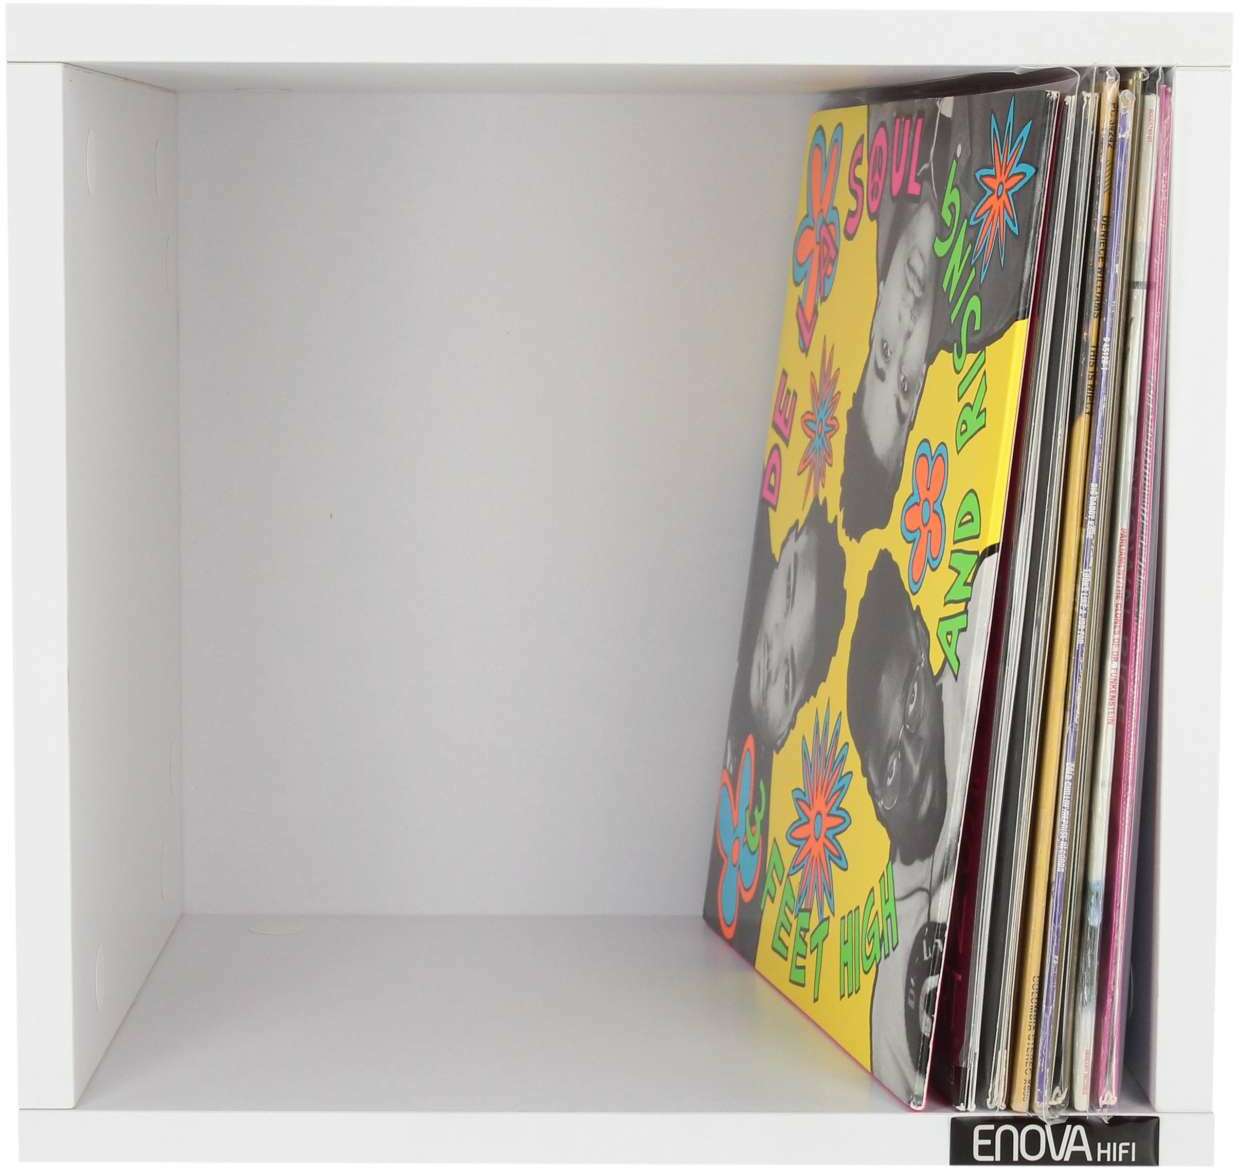 Enova Hifi Vinyle Box 120wh - Muebles DJ - Main picture